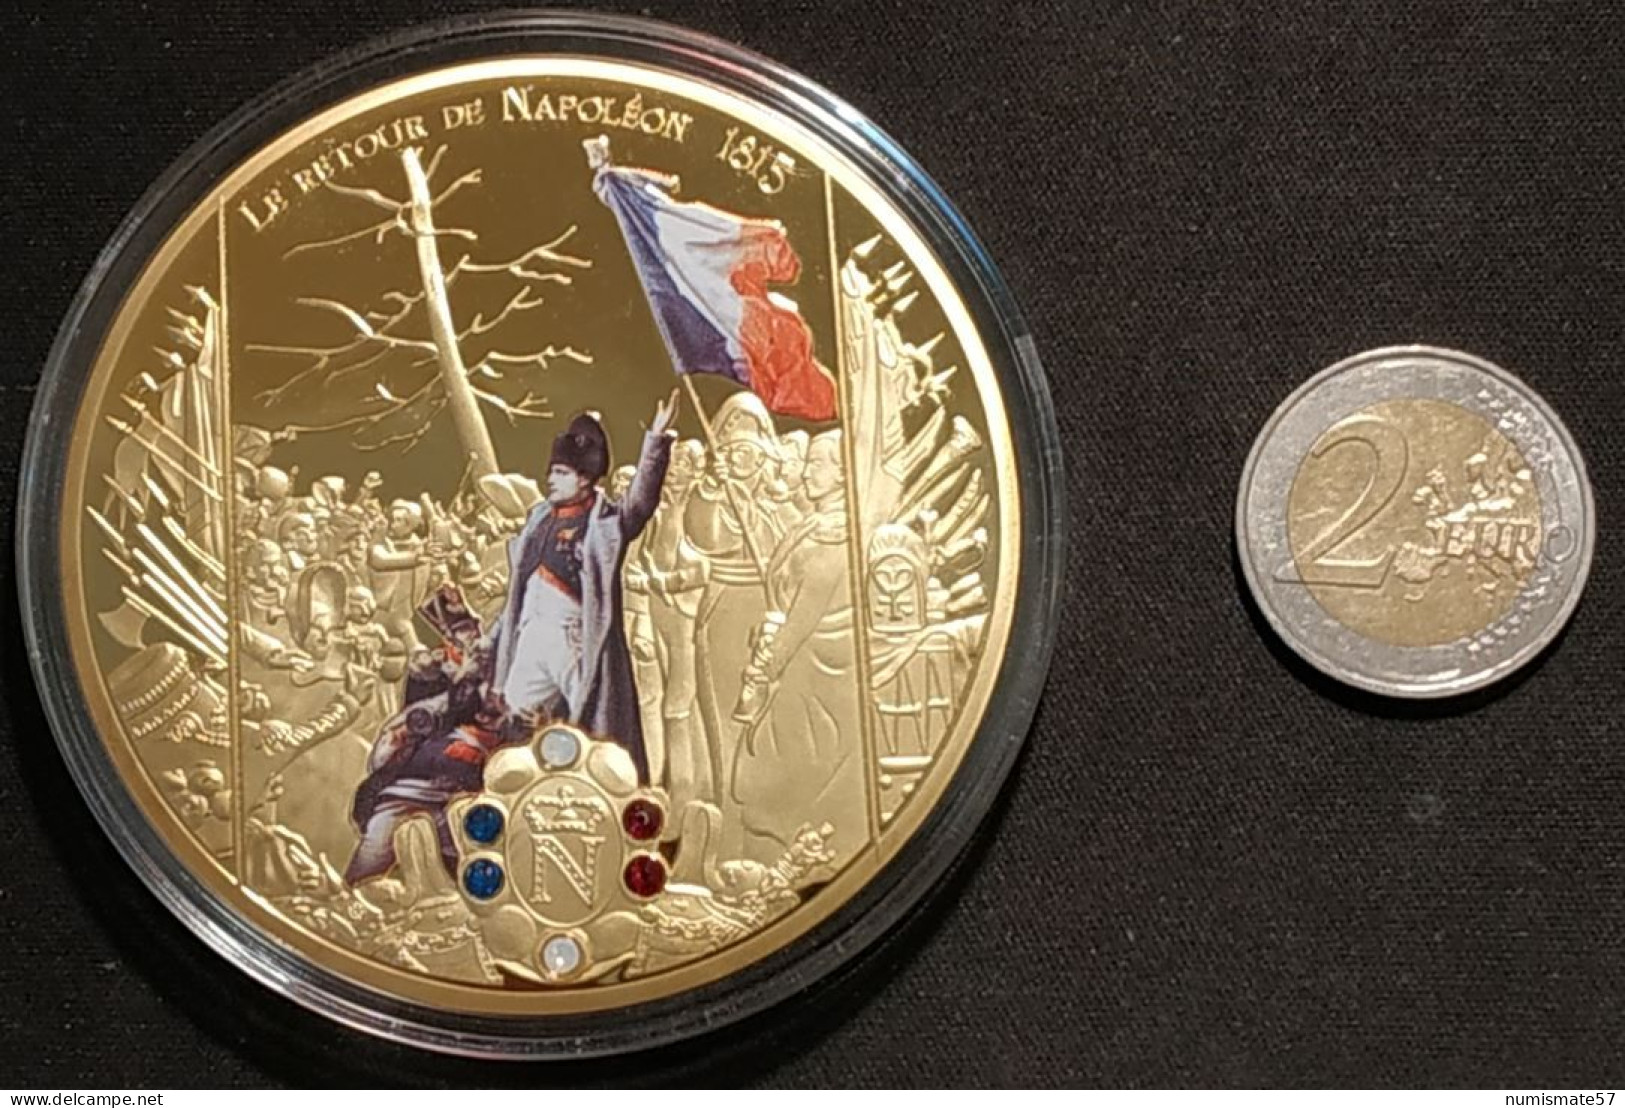 Médaille NAPOLÉON BONAPARTE - Le Retour De Napoléon 1815 - Empereur - Cuivre Doré Orné De Pierres Swarovski - Before 1871